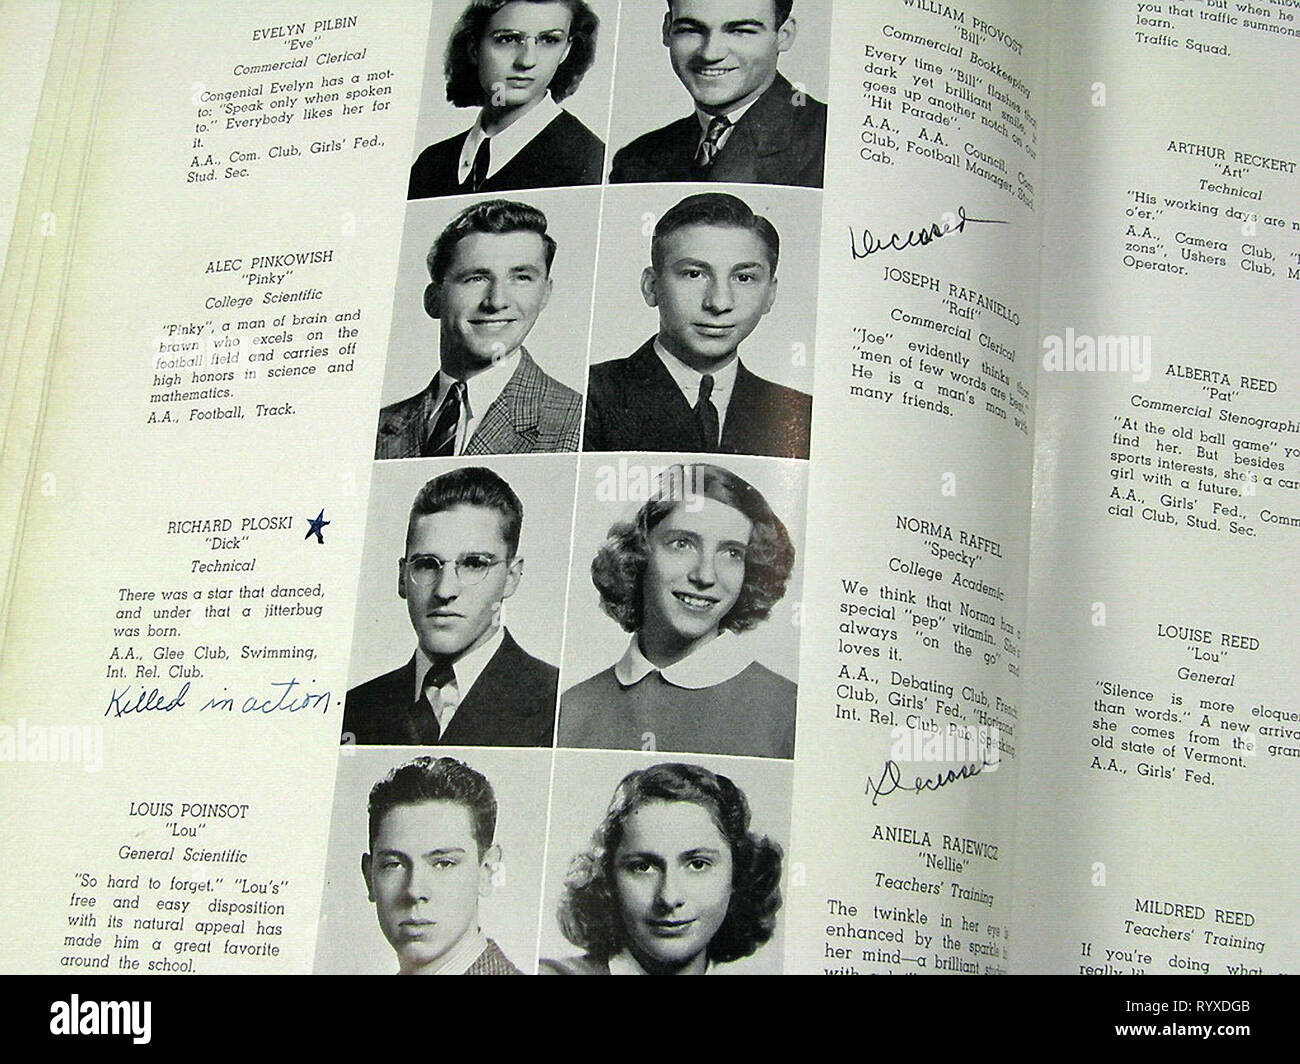 Opfer des Krieges in der Bristol High School Kategorie von 1942 und viele andere Jahrbücher über Amerika während des Zweiten Weltkriegs. Stockfoto